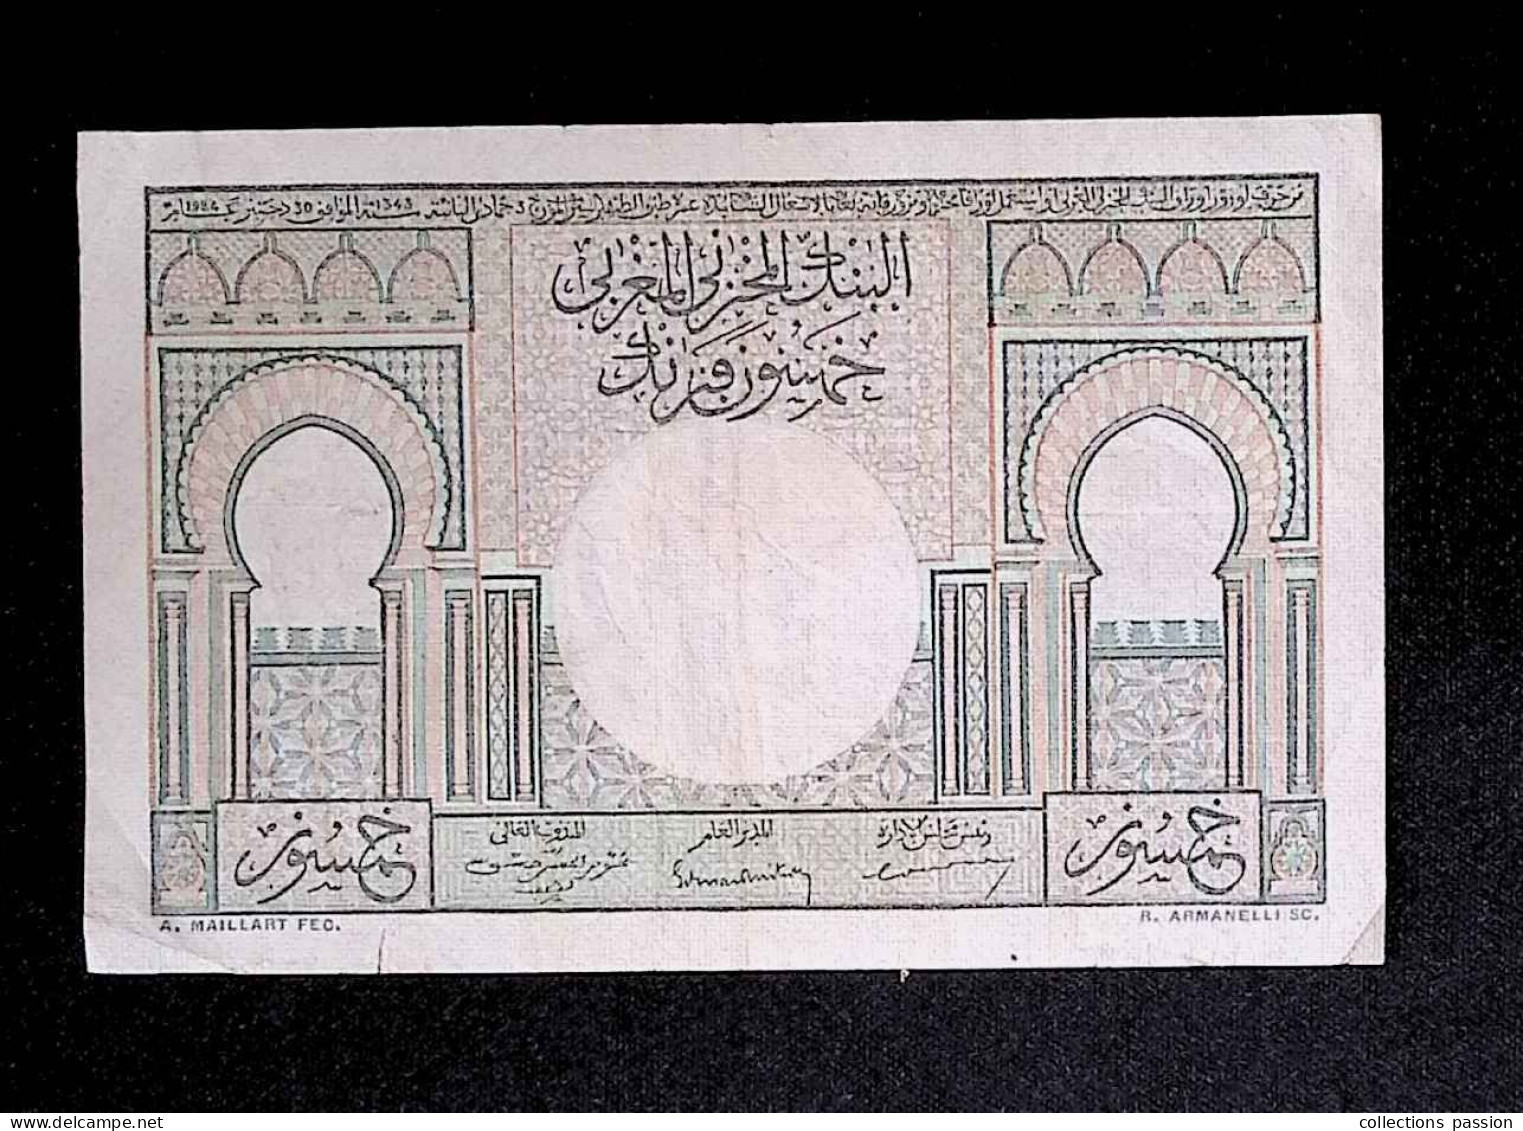 Billet, Banque D'état Du MAROC, Cinquante, 50 Francs, 2-12-49, 1949, 2 Scans - Morocco